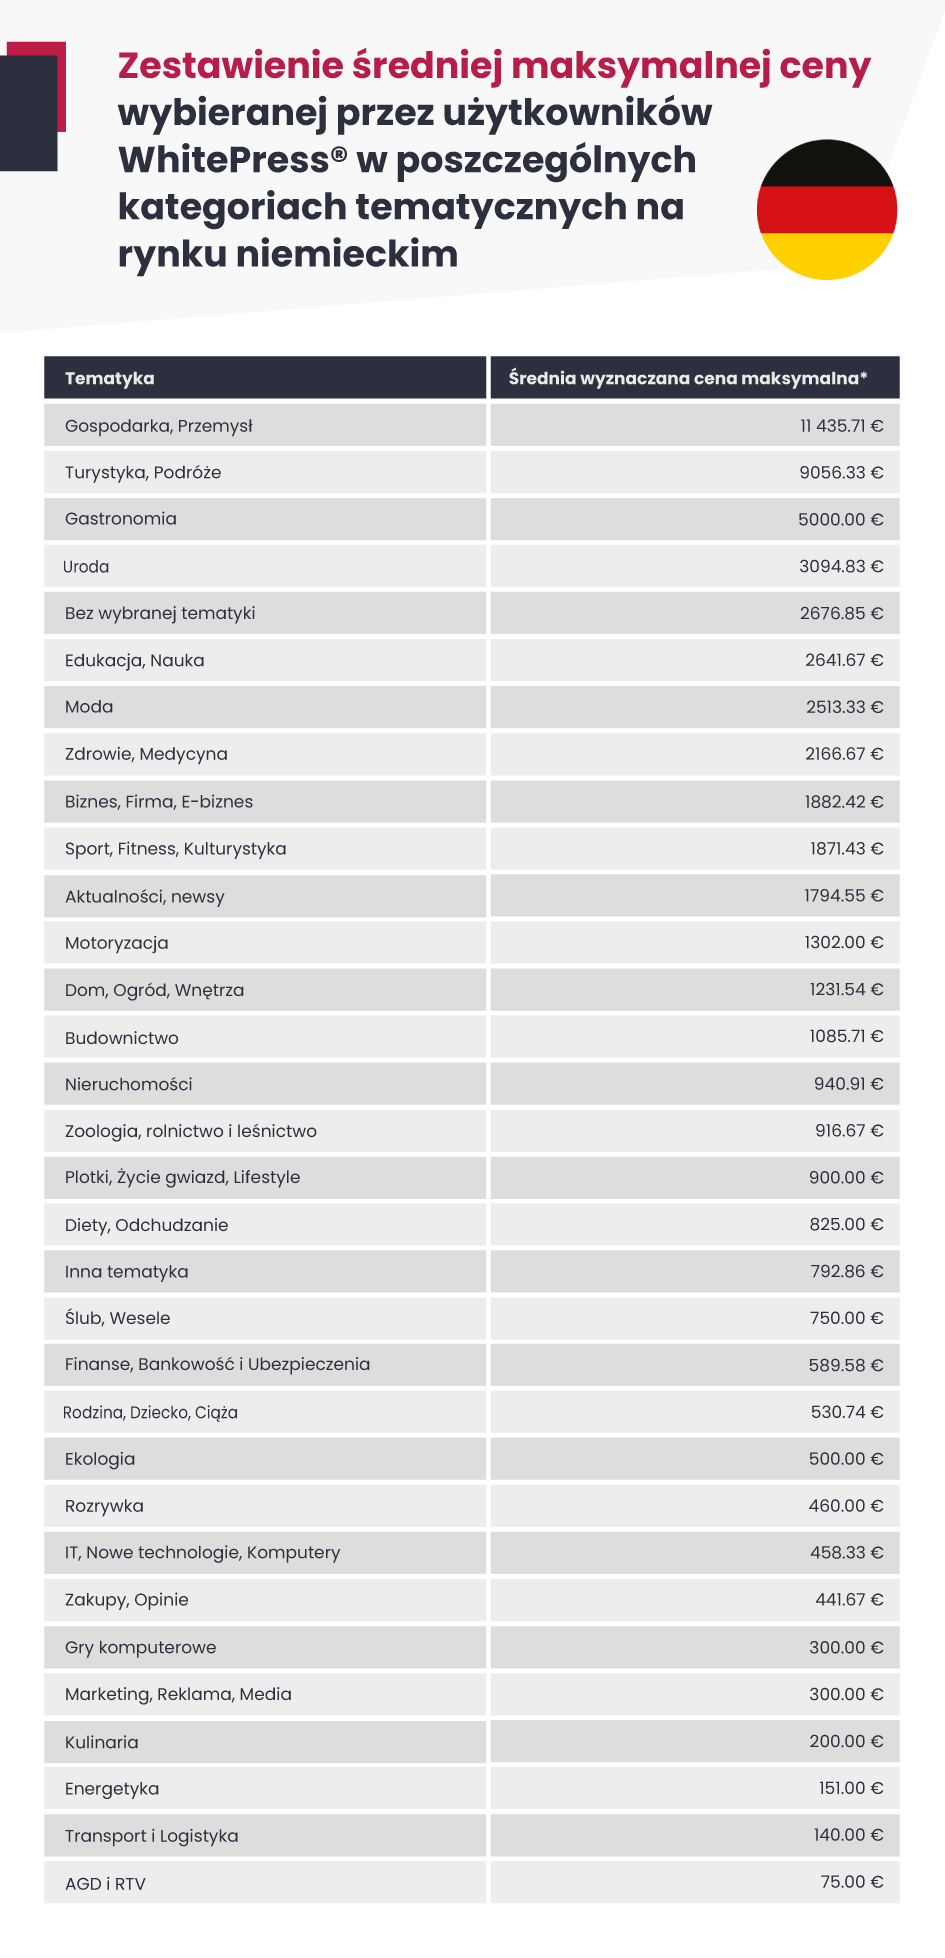 Tabela przedstawiająca zestawienie średnich cen maksymalnych wybieranych przez użytkowników platformy WhitePress w poszczególnych kategoriach tematycznych na rynku niemieckim